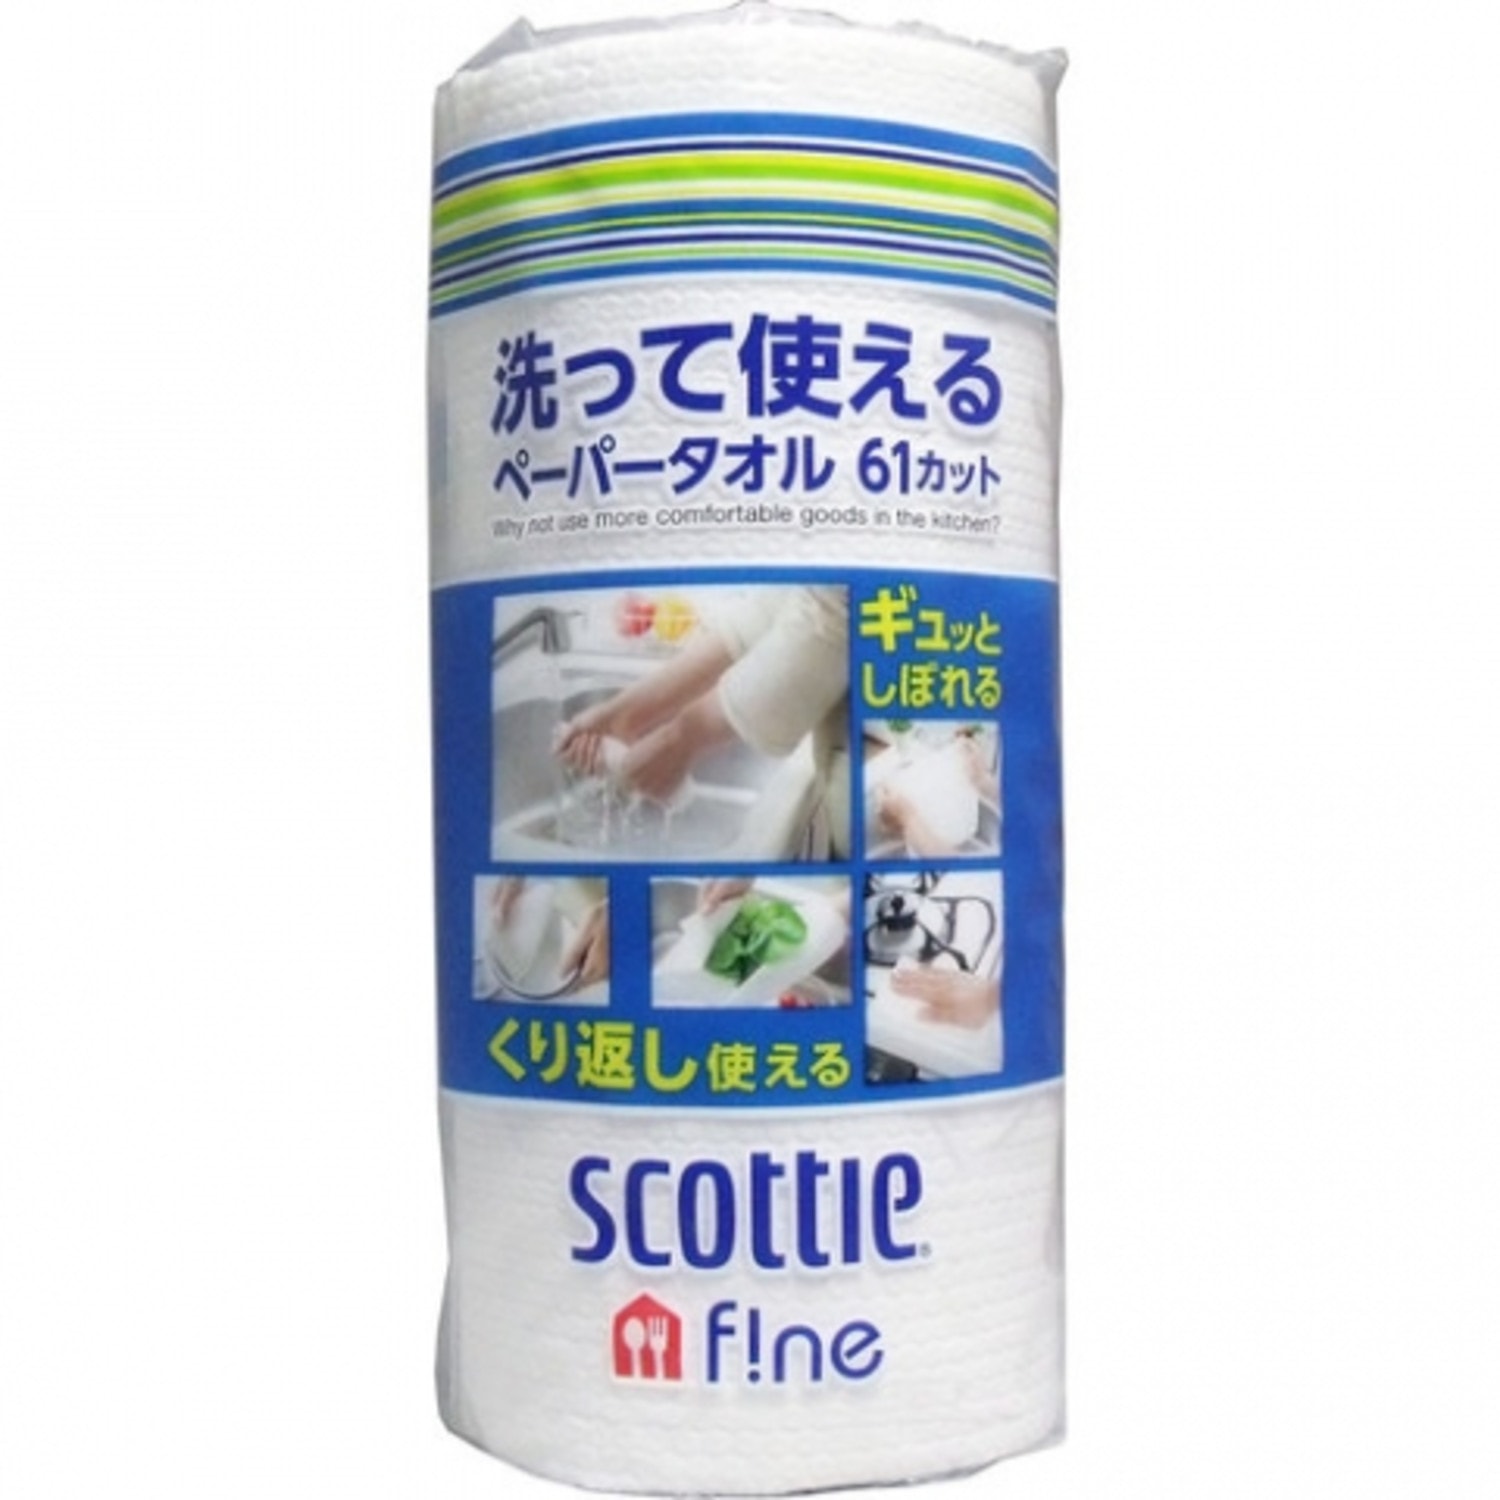 Многоразовые бумажные полотенца Crecia Scottie 61л в рулоне / 353308